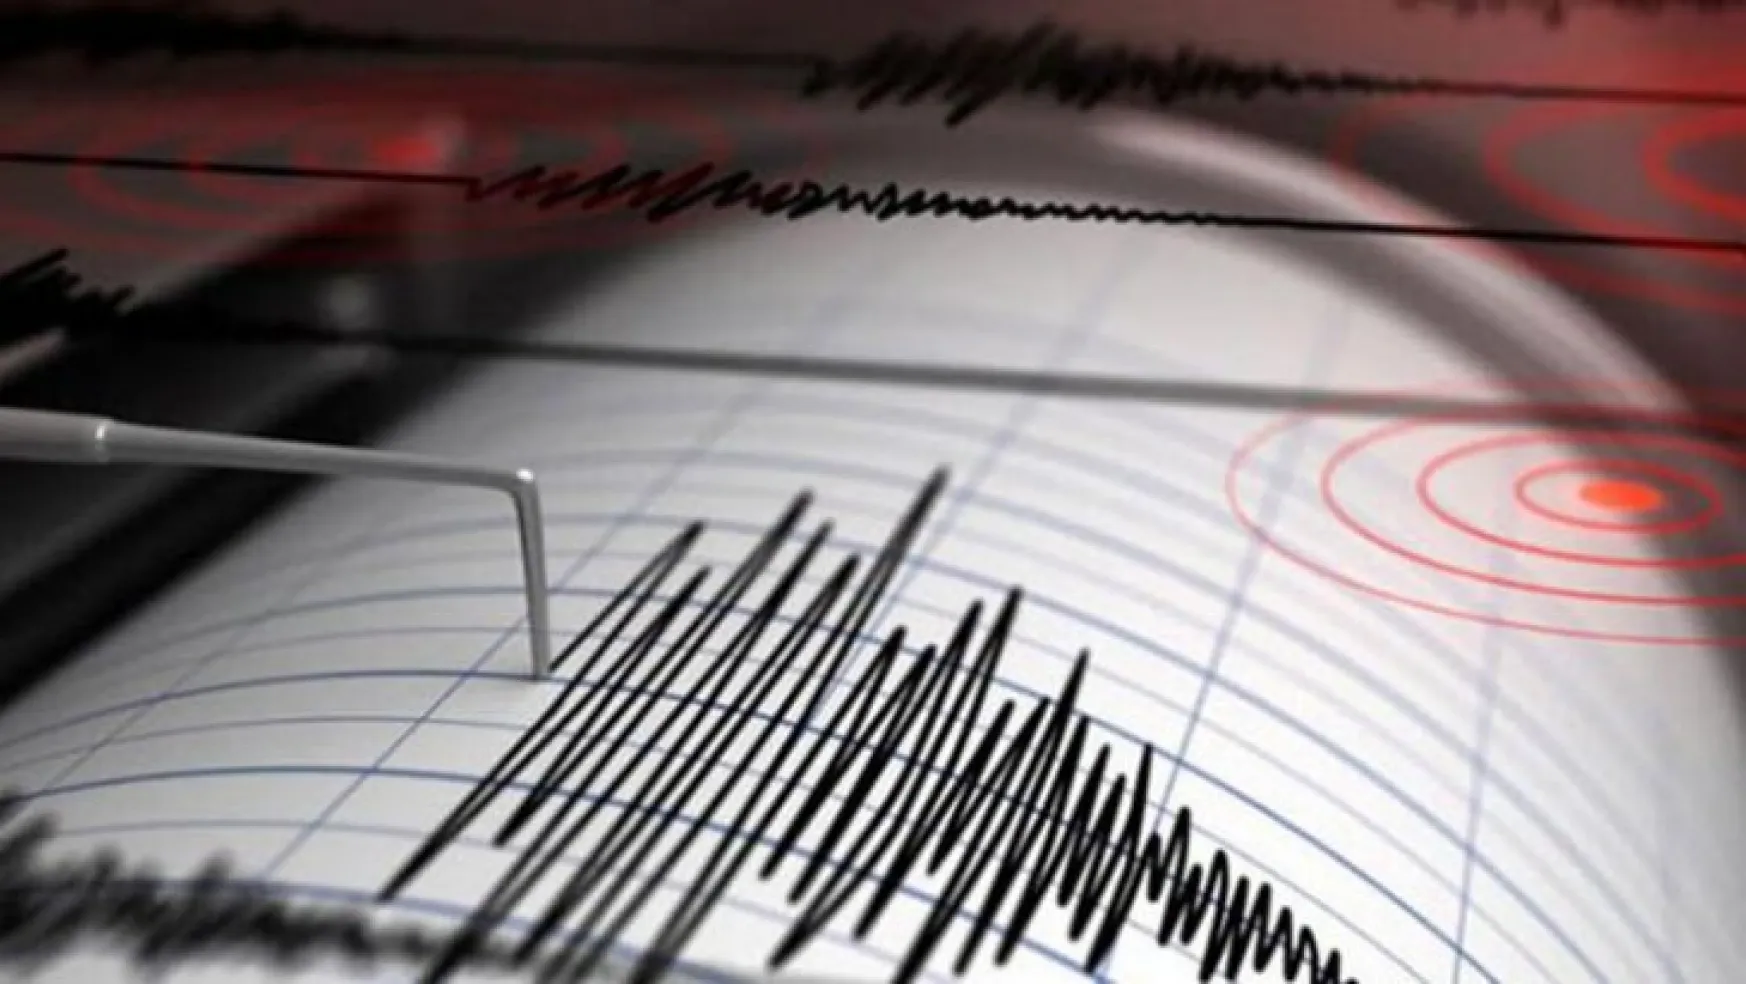 Kayseri'deki depremin şiddeti 4.9 olarak revize edildi